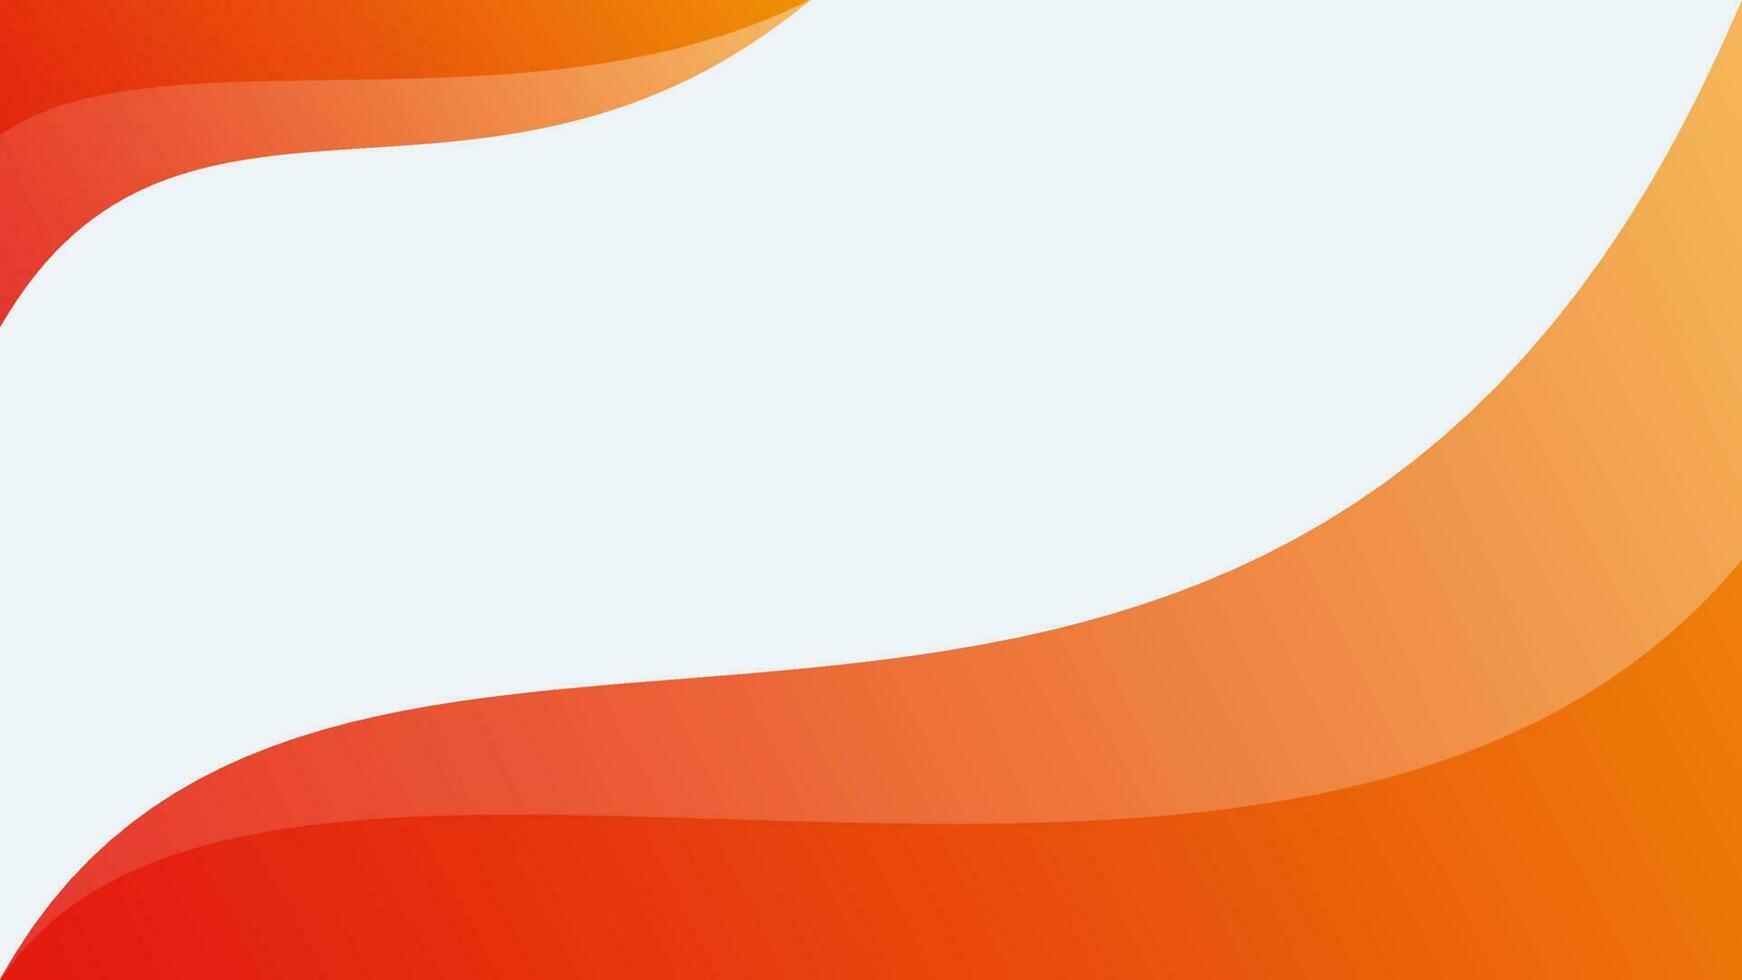 Hintergrund Design Vektor mit Orange Farbe geeignet zum 4k Auflösung